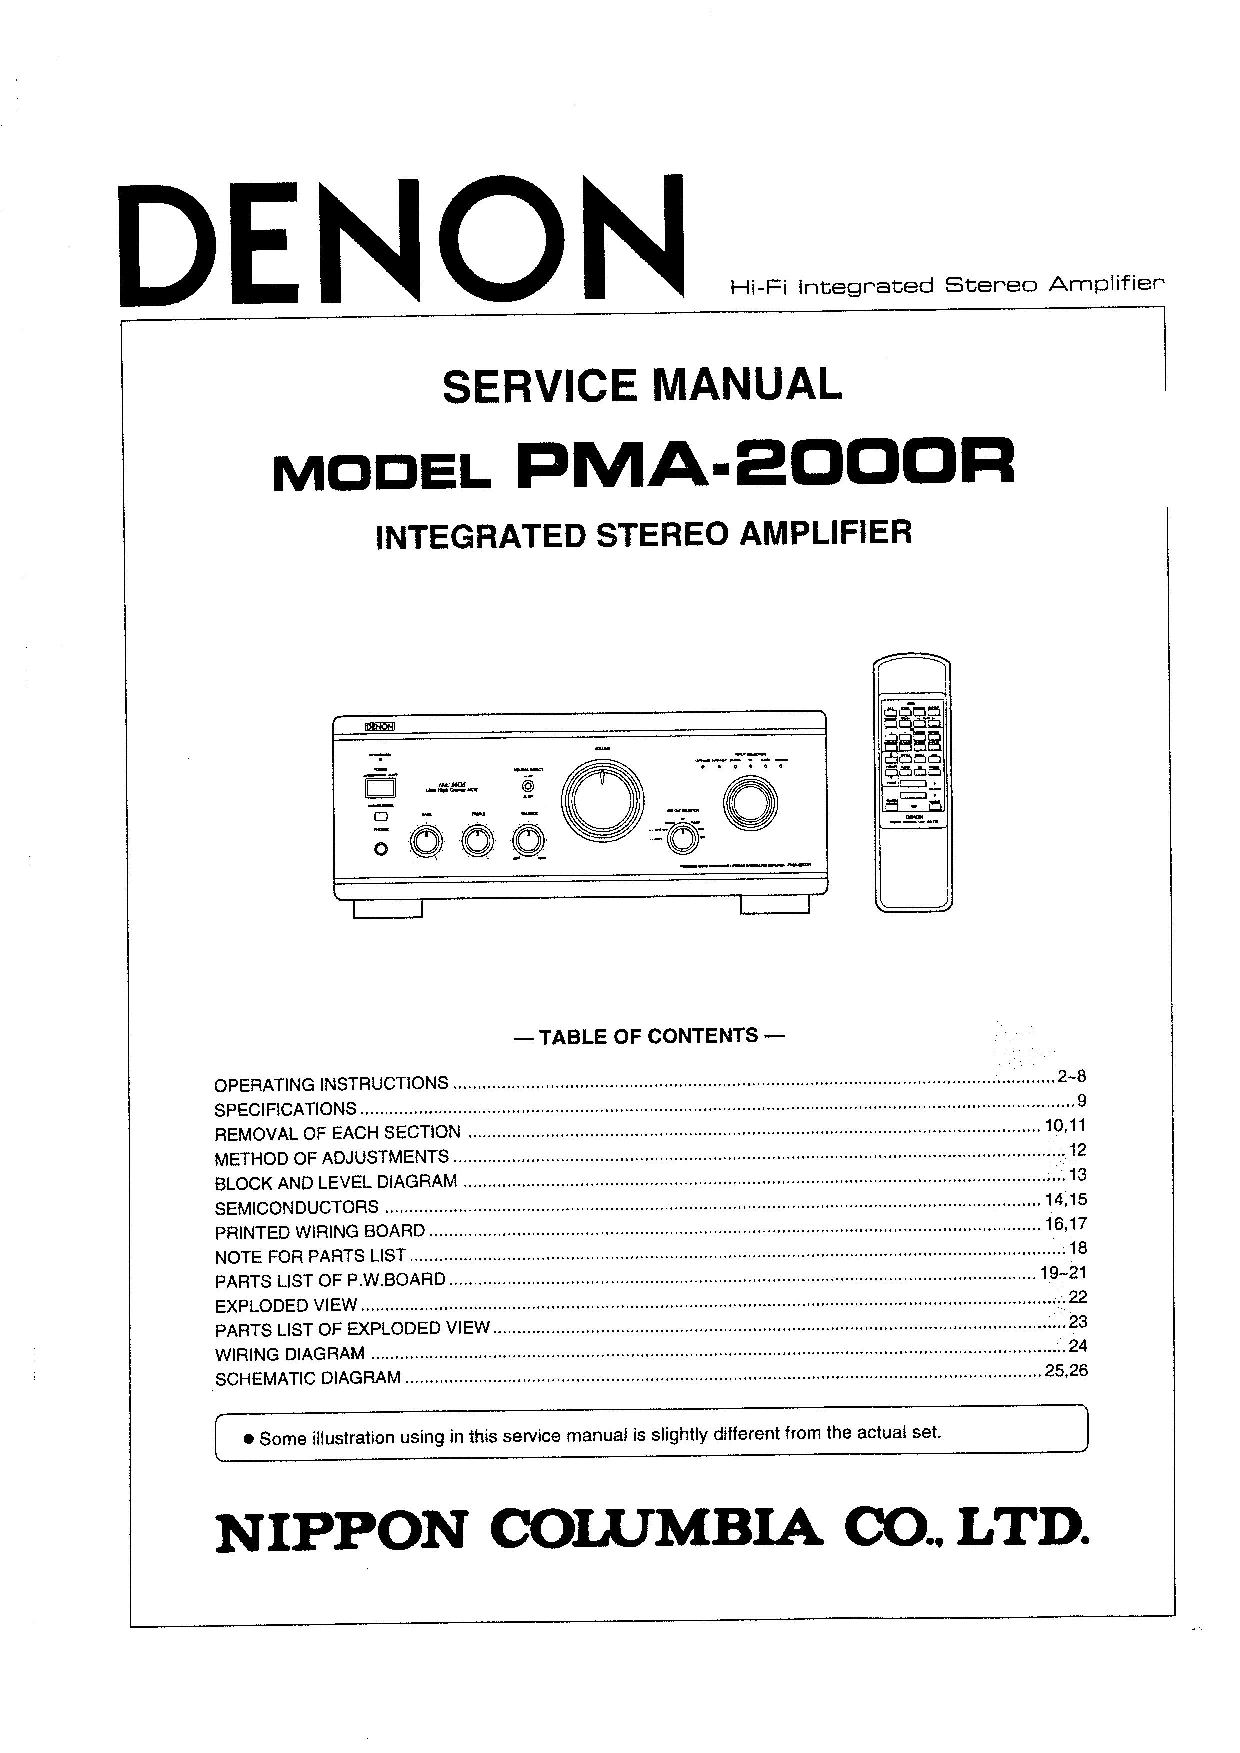 Denon PMA-2000R Service Manual